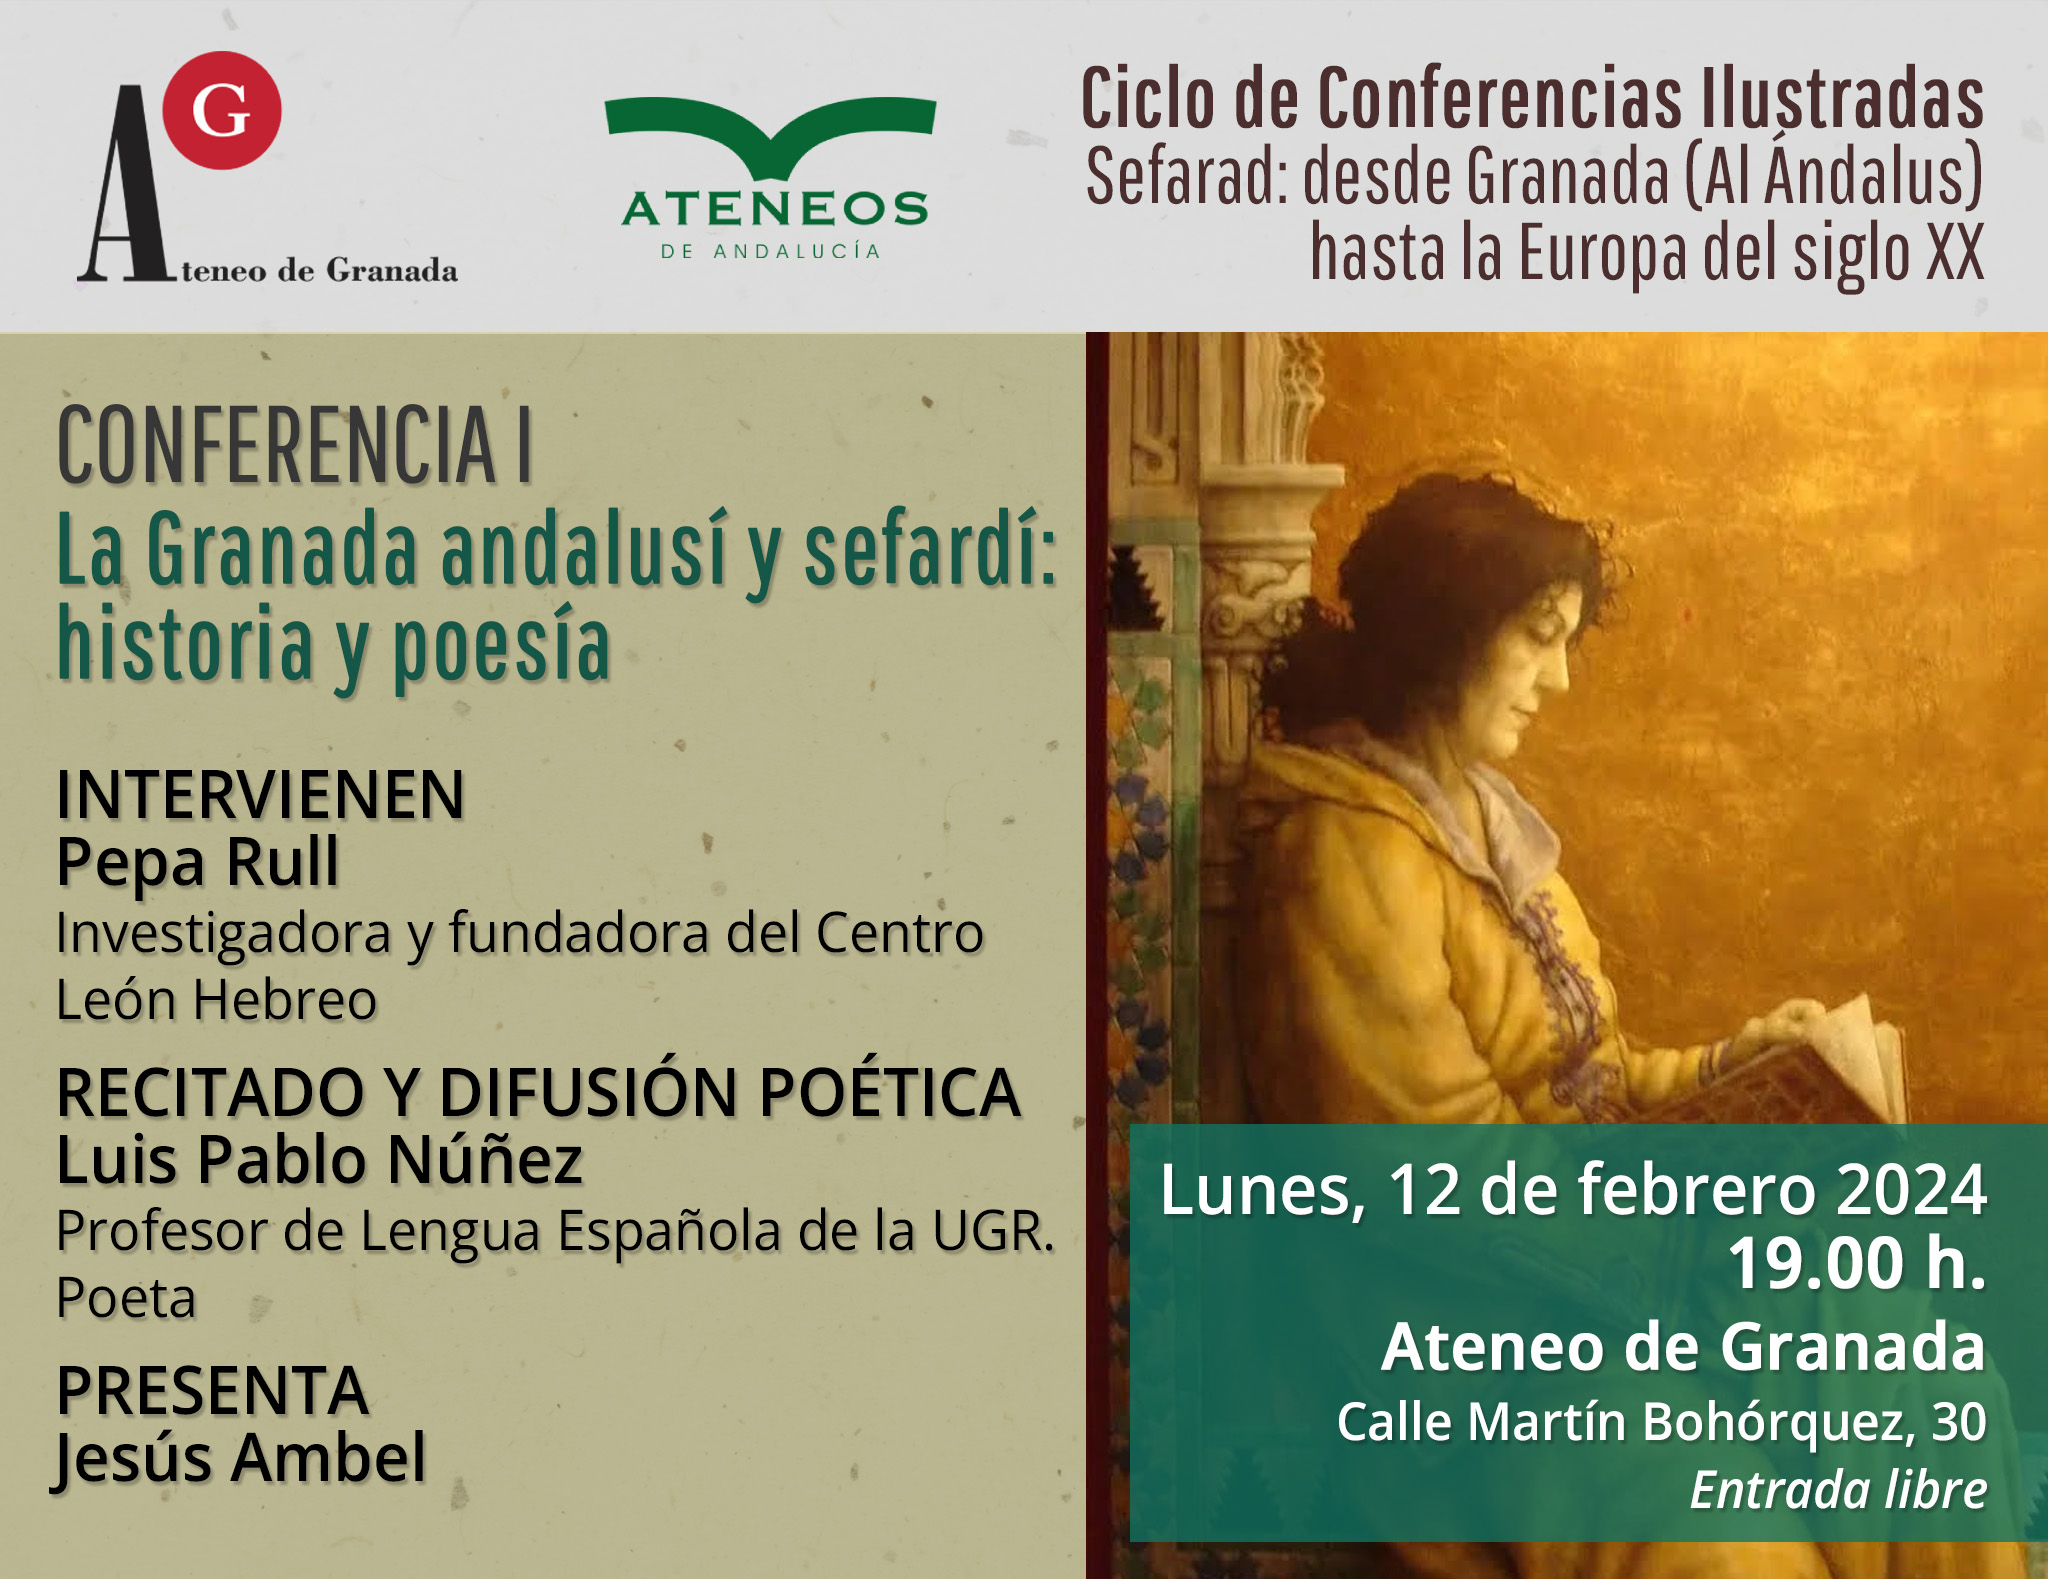 Conferencia | La Granada andalusí y sefardí